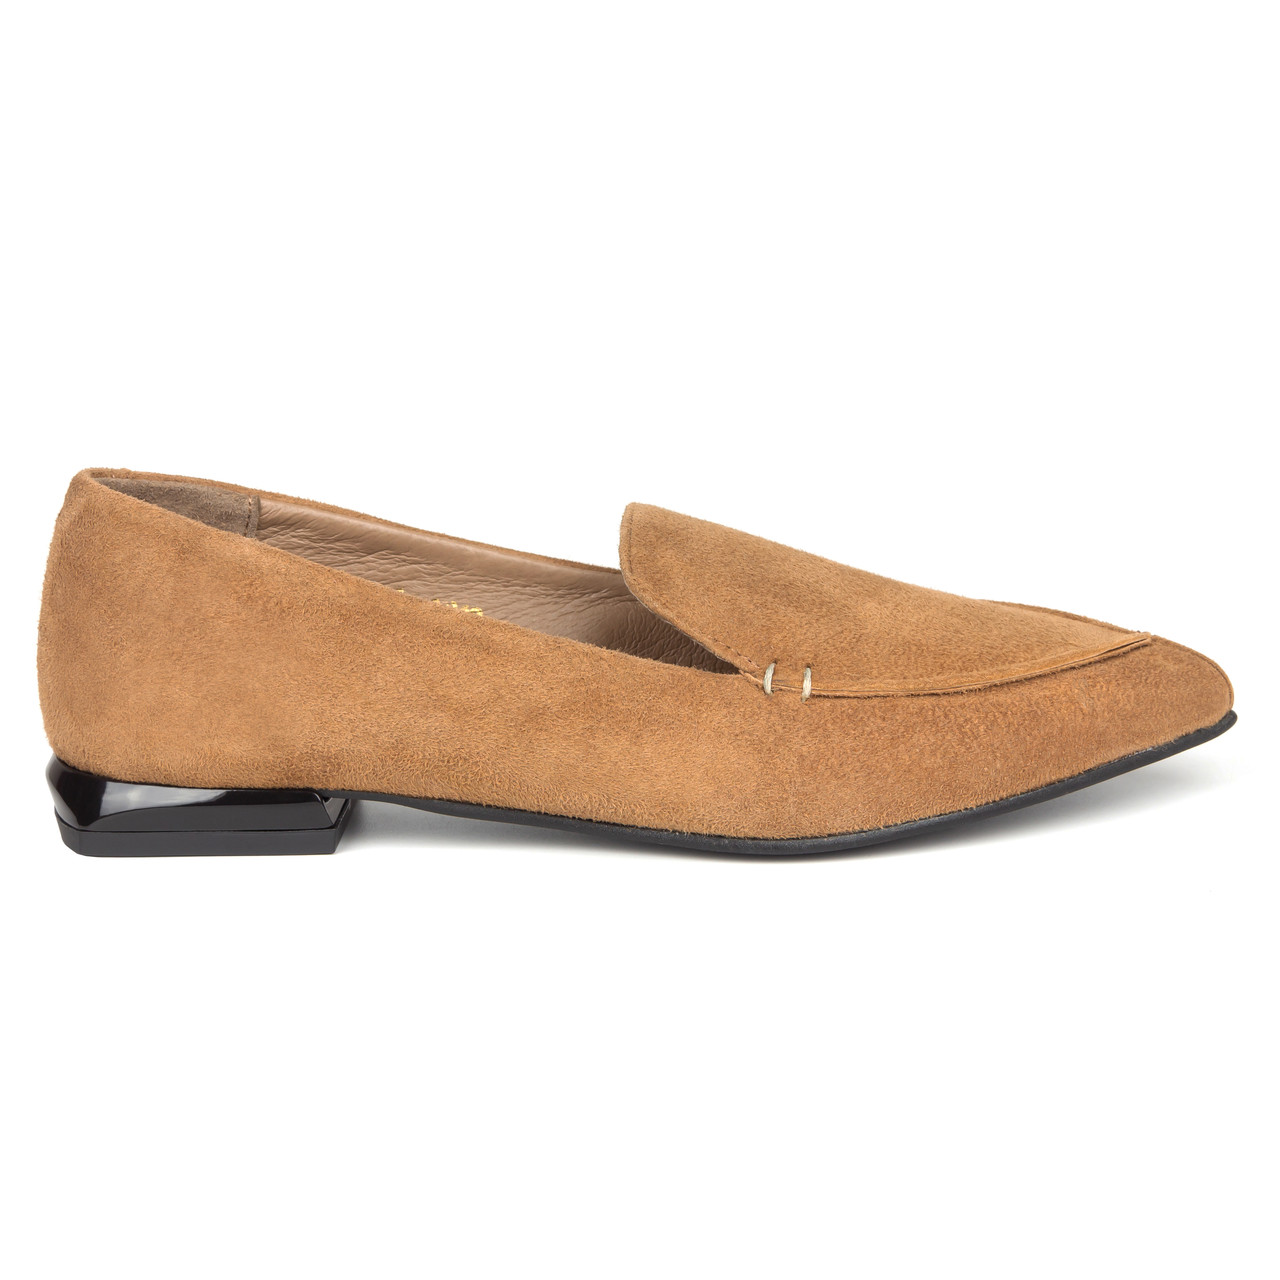 Туфлі жіночі 37-39 woman's heel коричневі замшеві на плоскій підошві з загостреним носком, фото 1